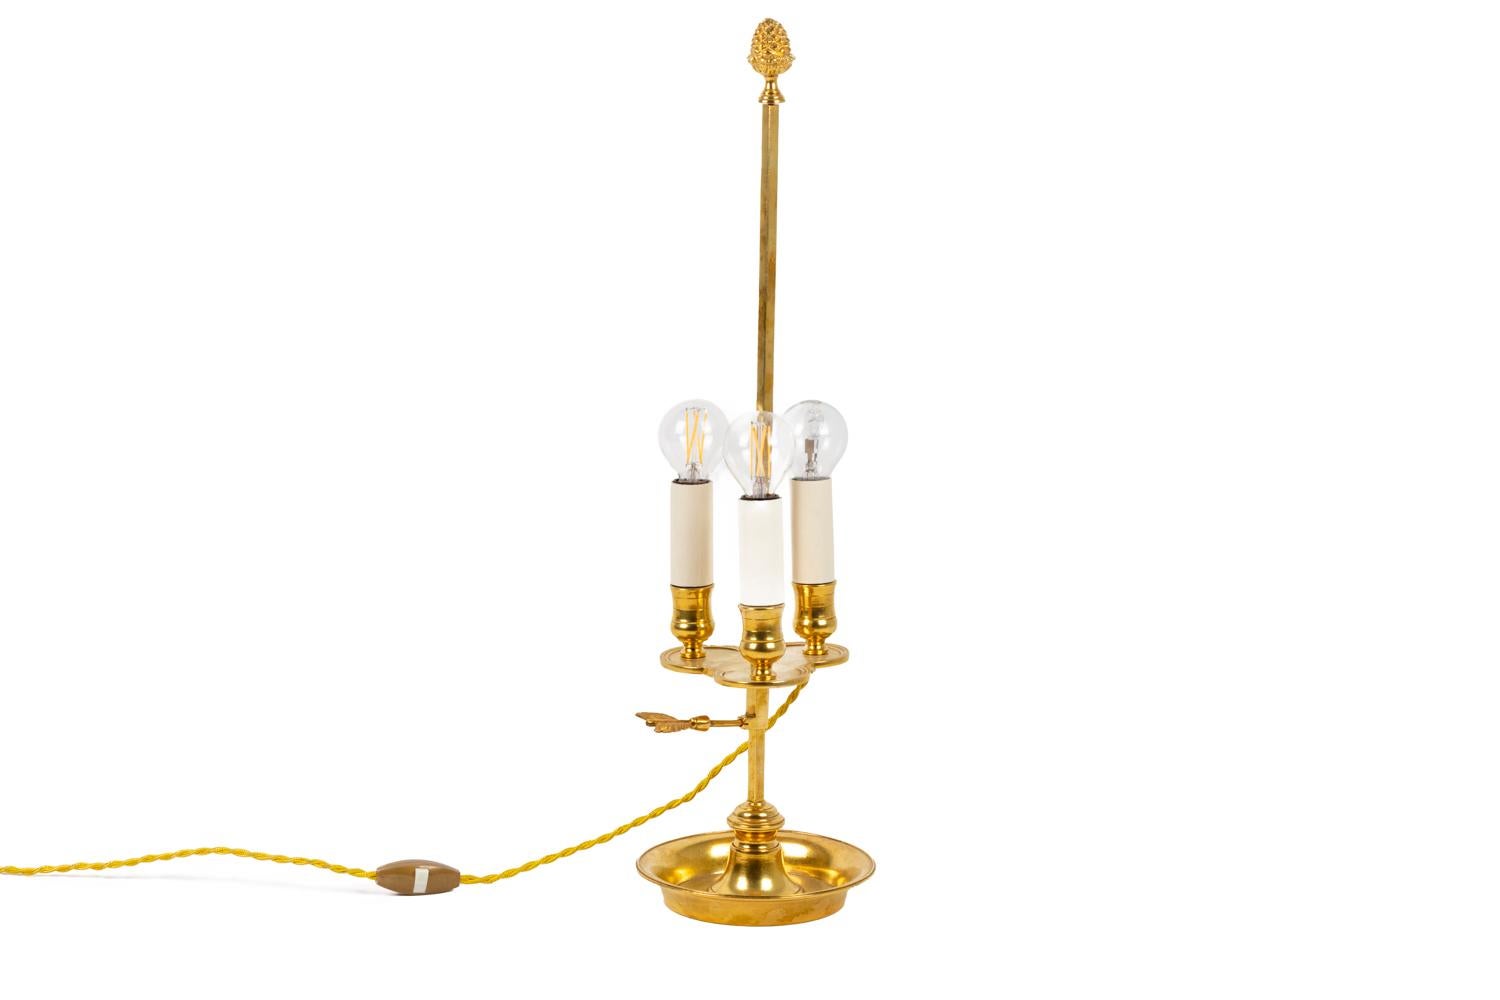 Bouillotte-Lampe im Louis XVI-Stil aus vergoldeter Bronze mit drei Lichtern. Der quadratische Schaft wird von einem Tannenzapfen gekrönt und ist mit einem Pfeil verziert. Eine dreiflügelige Oberfläche trägt die drei Lichter, deren Bögen mit